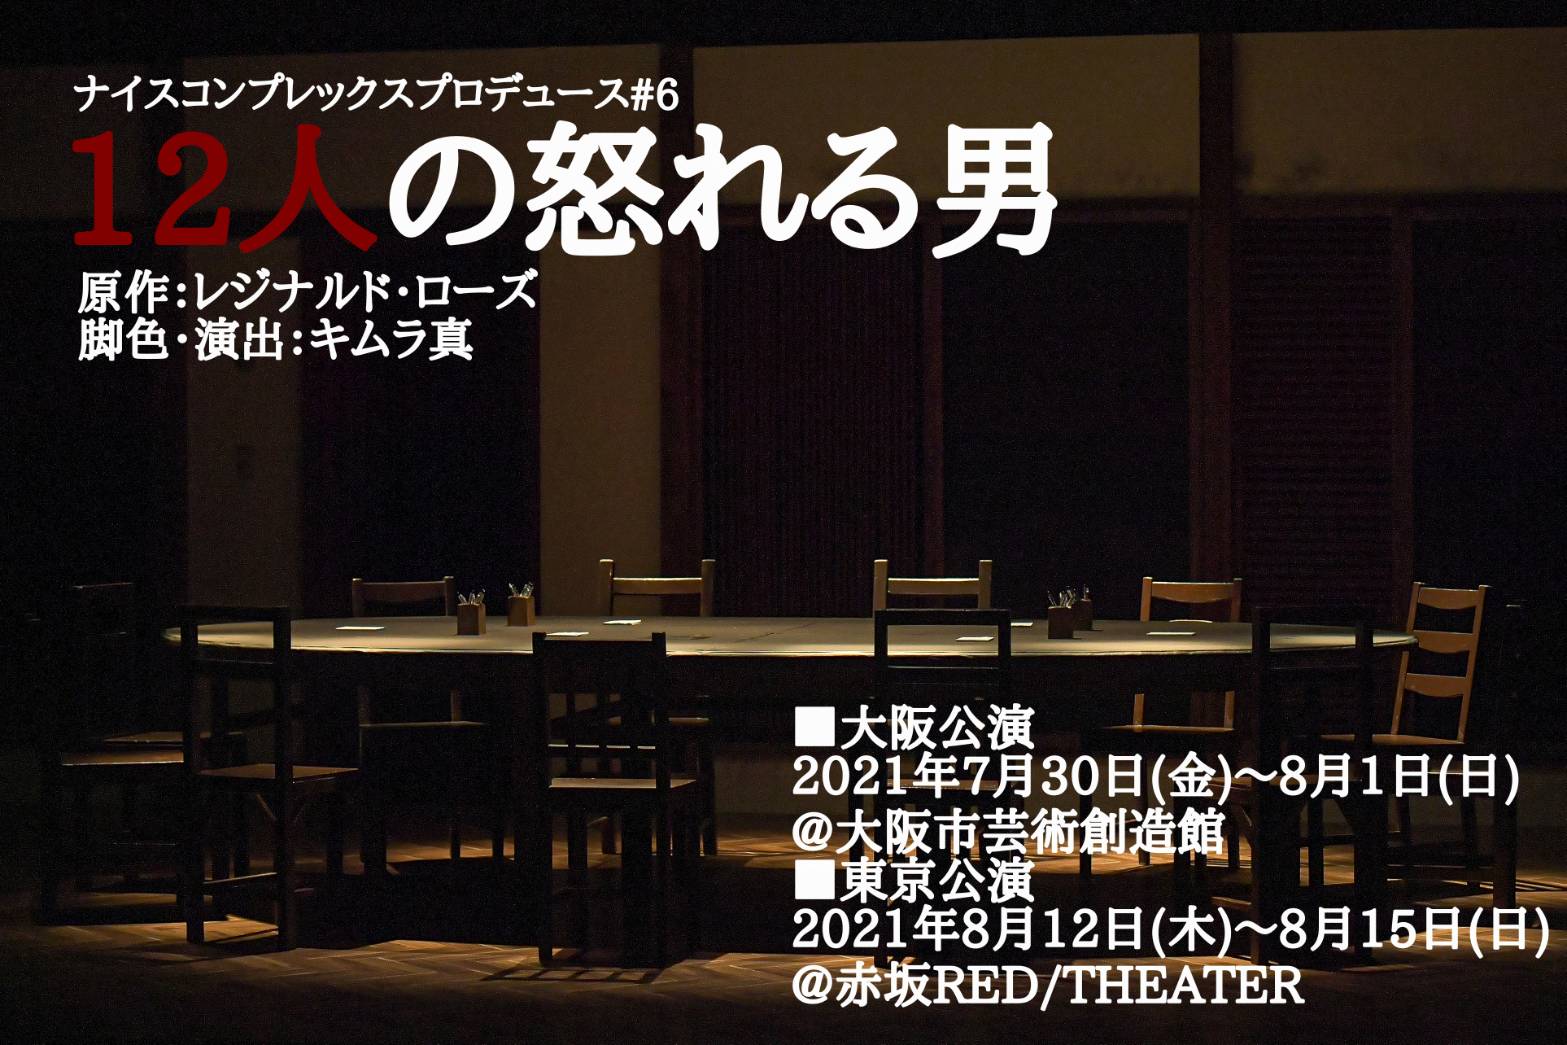 ナイコンの舞台『12人の怒れる男』4シーズン目、キャストに東拓海・藤原祐規ら イメージ画像